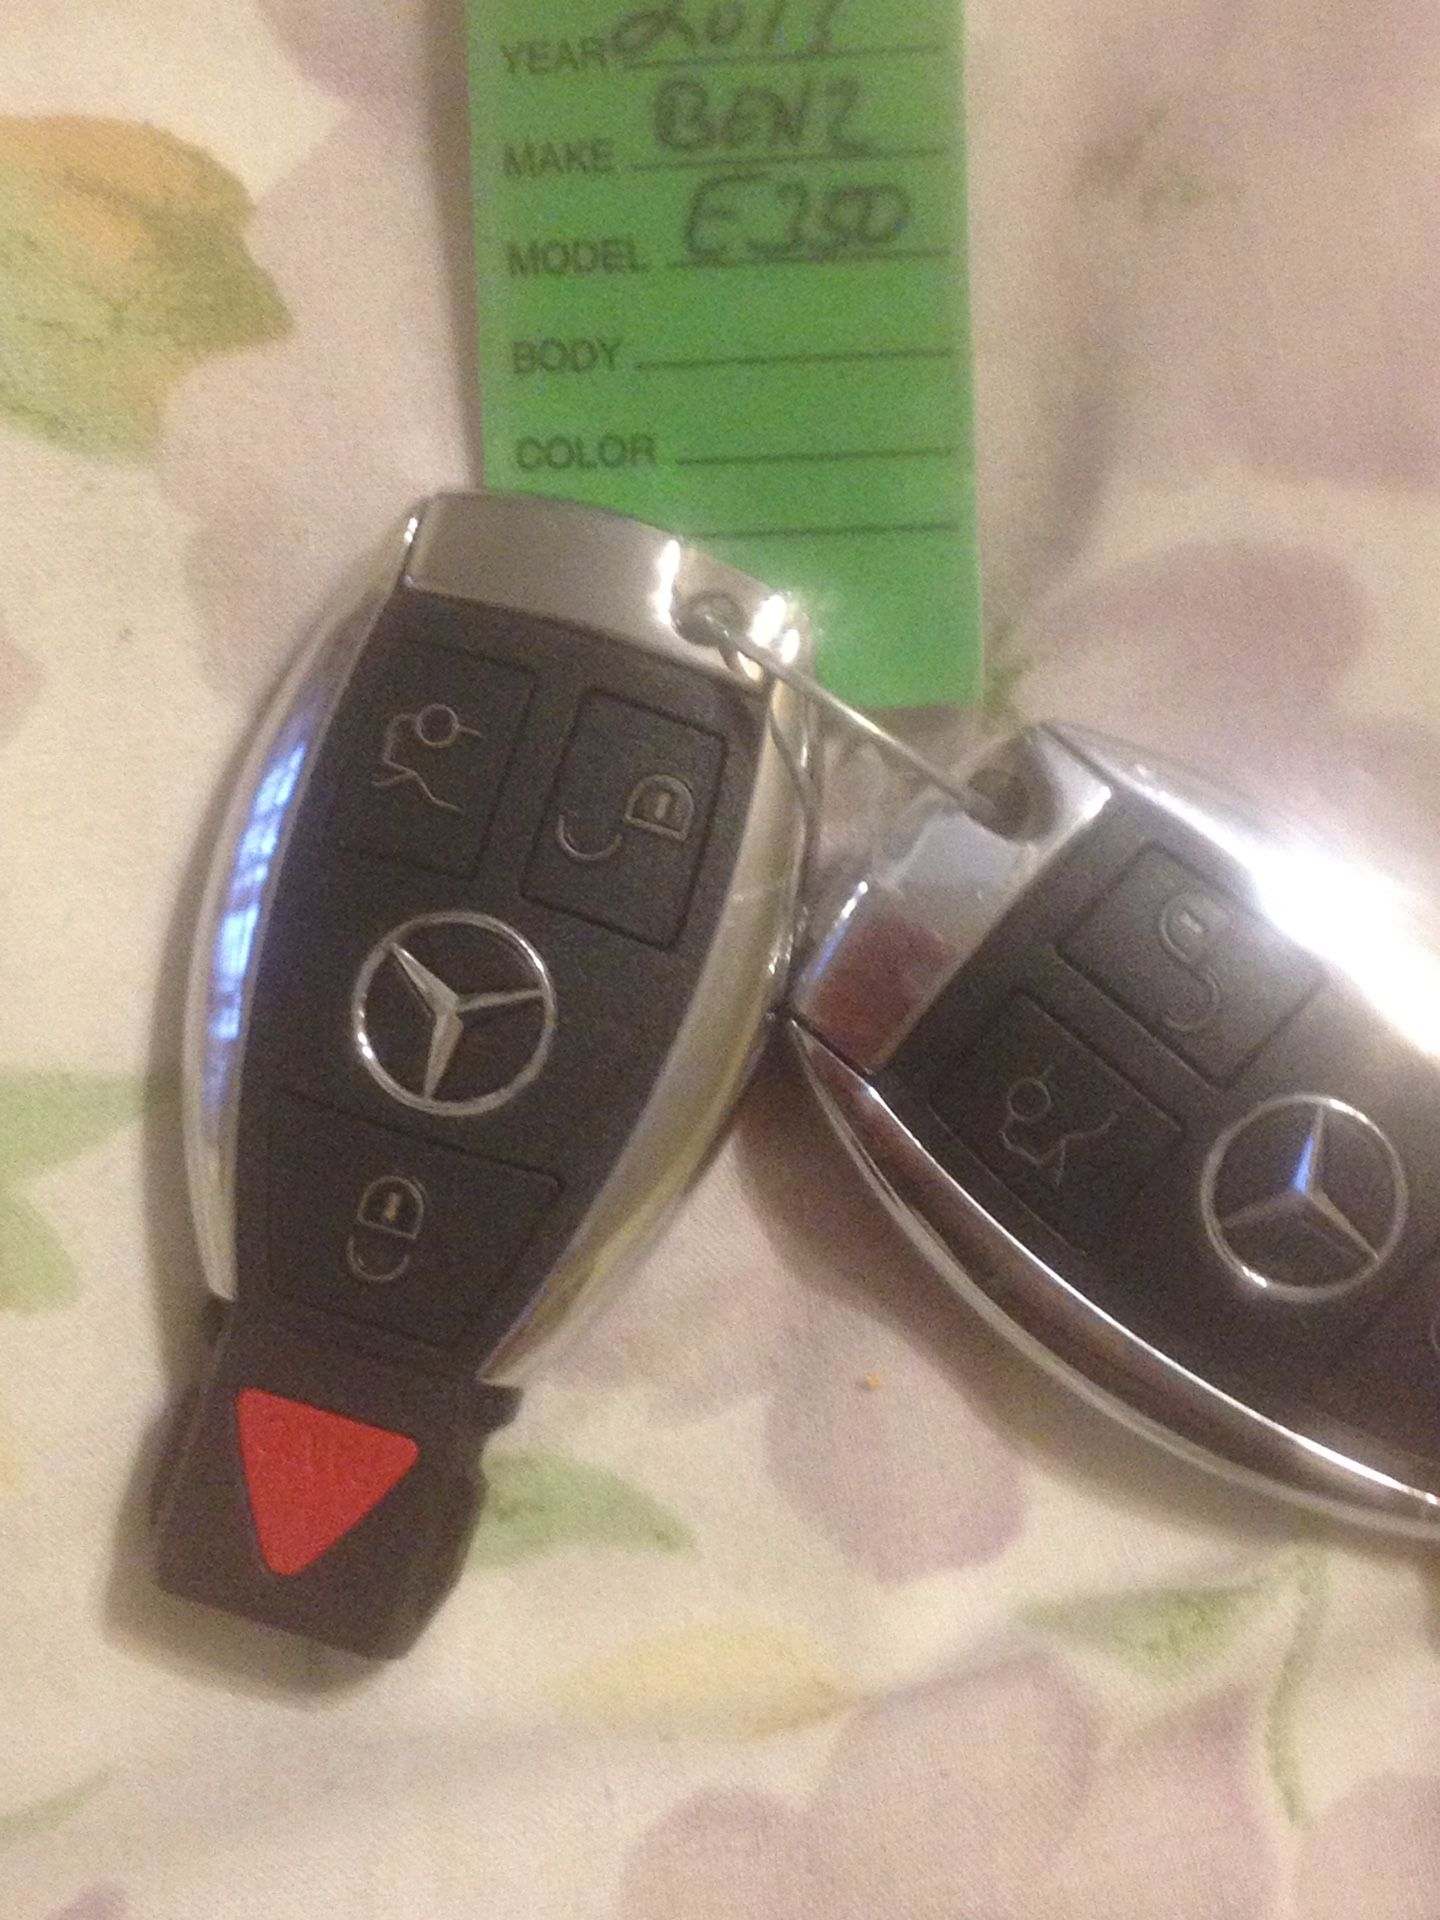 2013 Mercedes key fob